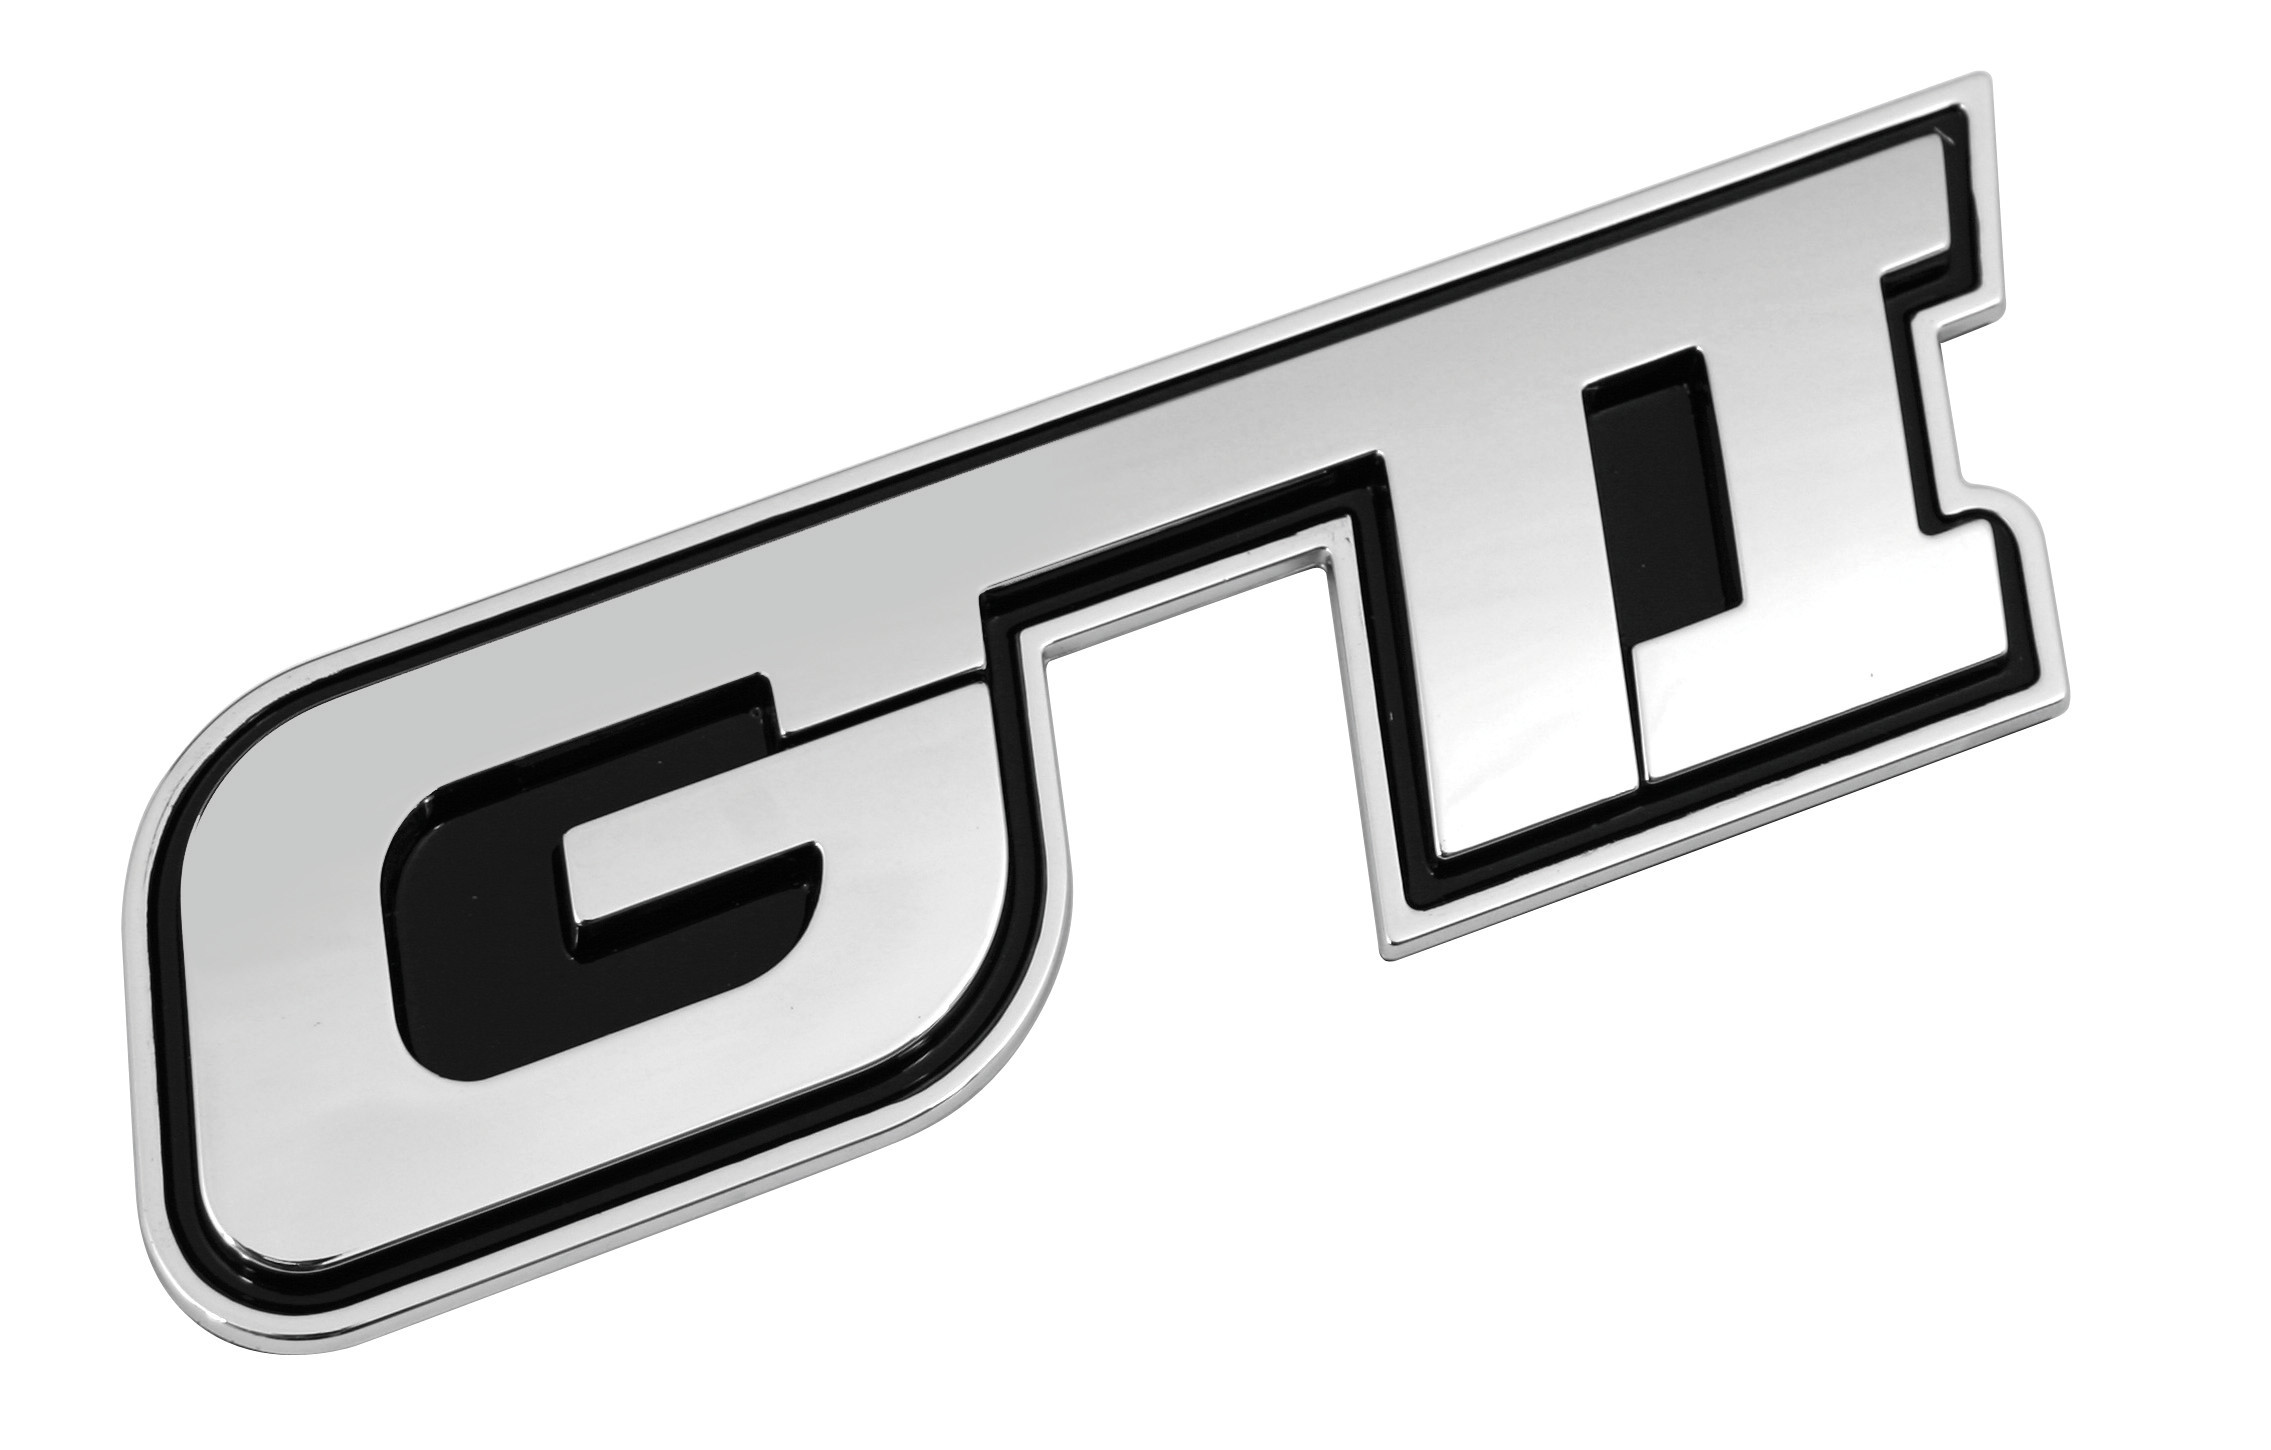 Chromed 3D emblem - GTI thumb